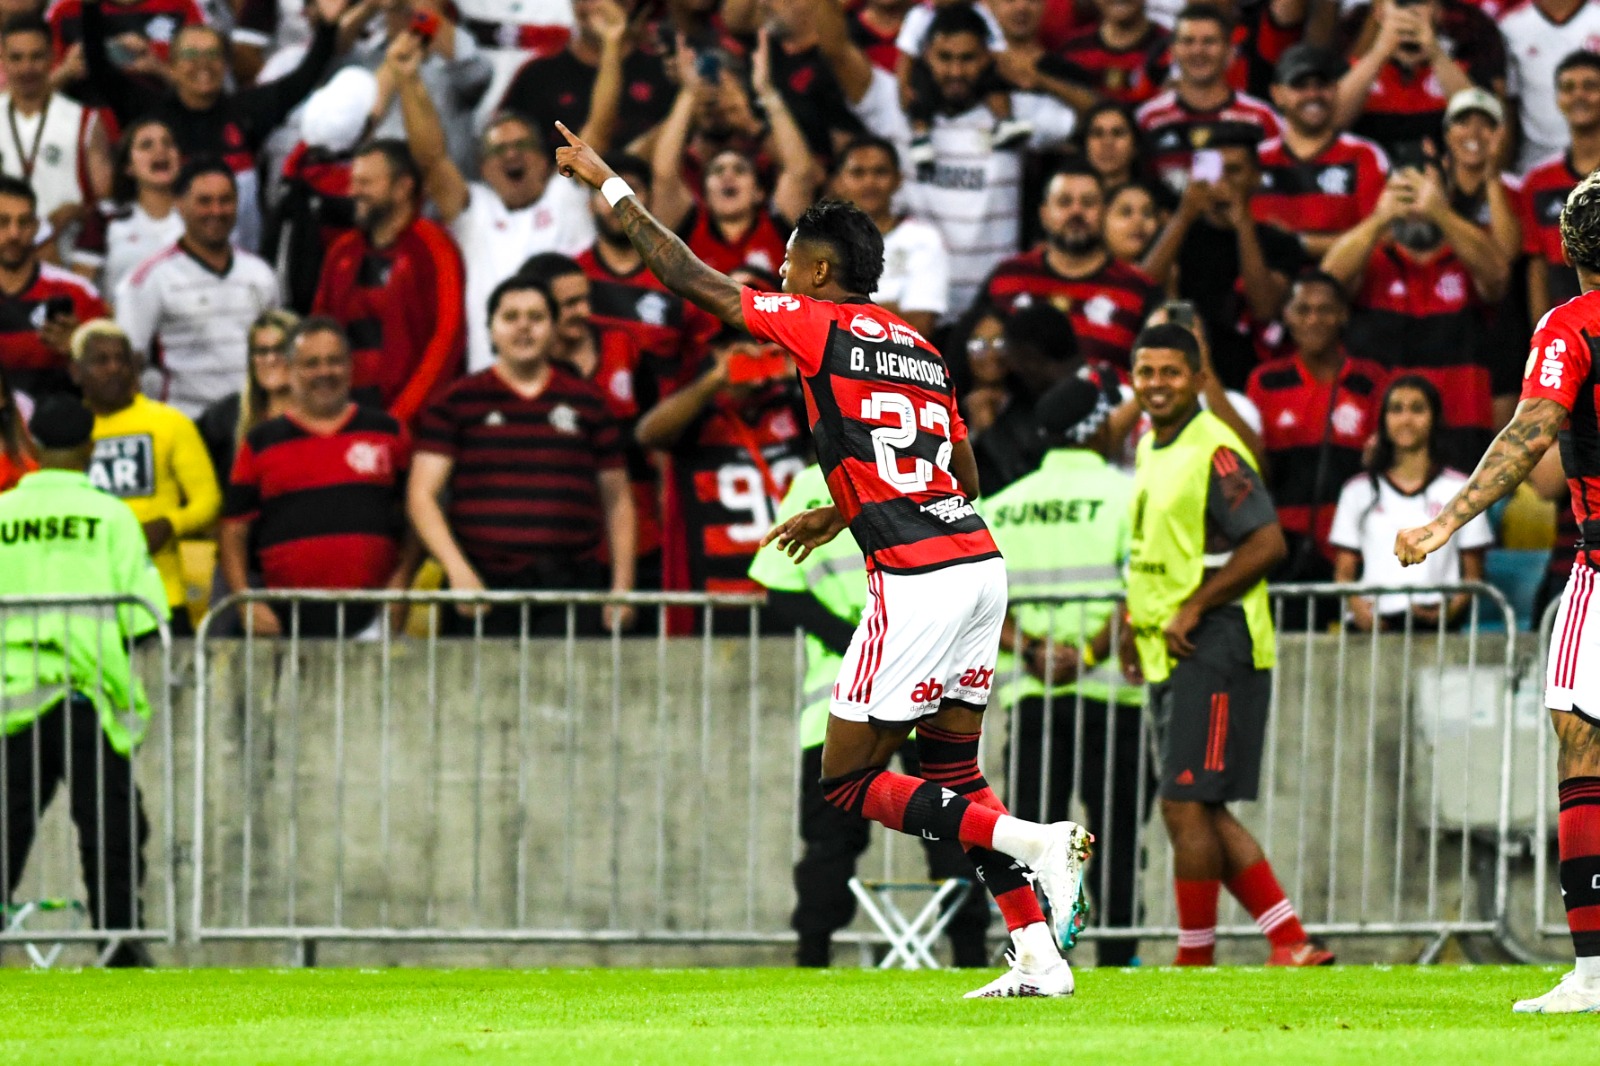 Flamengo confirma mais um jogo da Libertadores no Maracanã